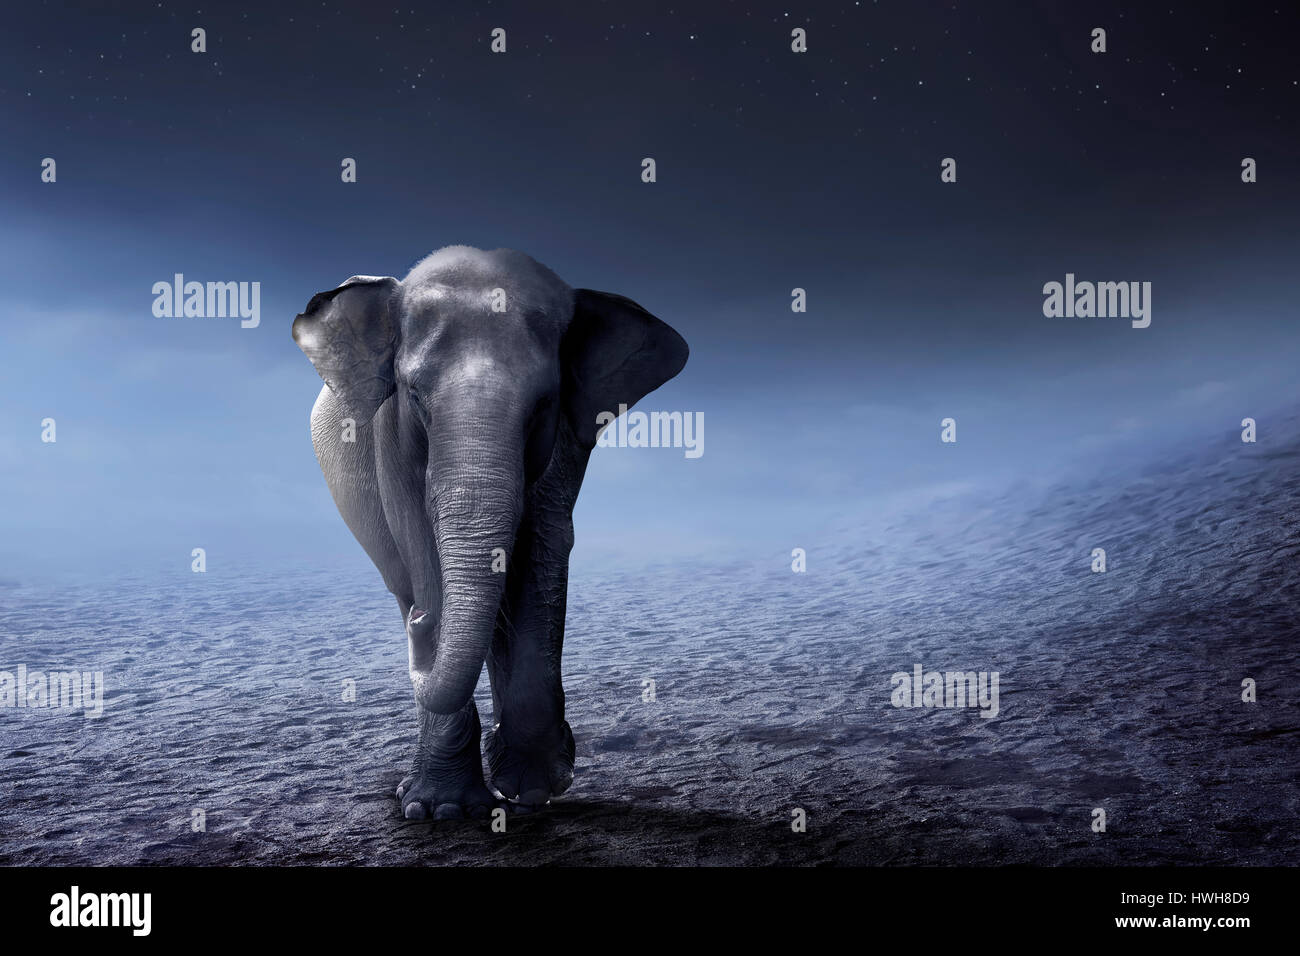 Sumatran elephant walk on the desert with night background Stock Photo